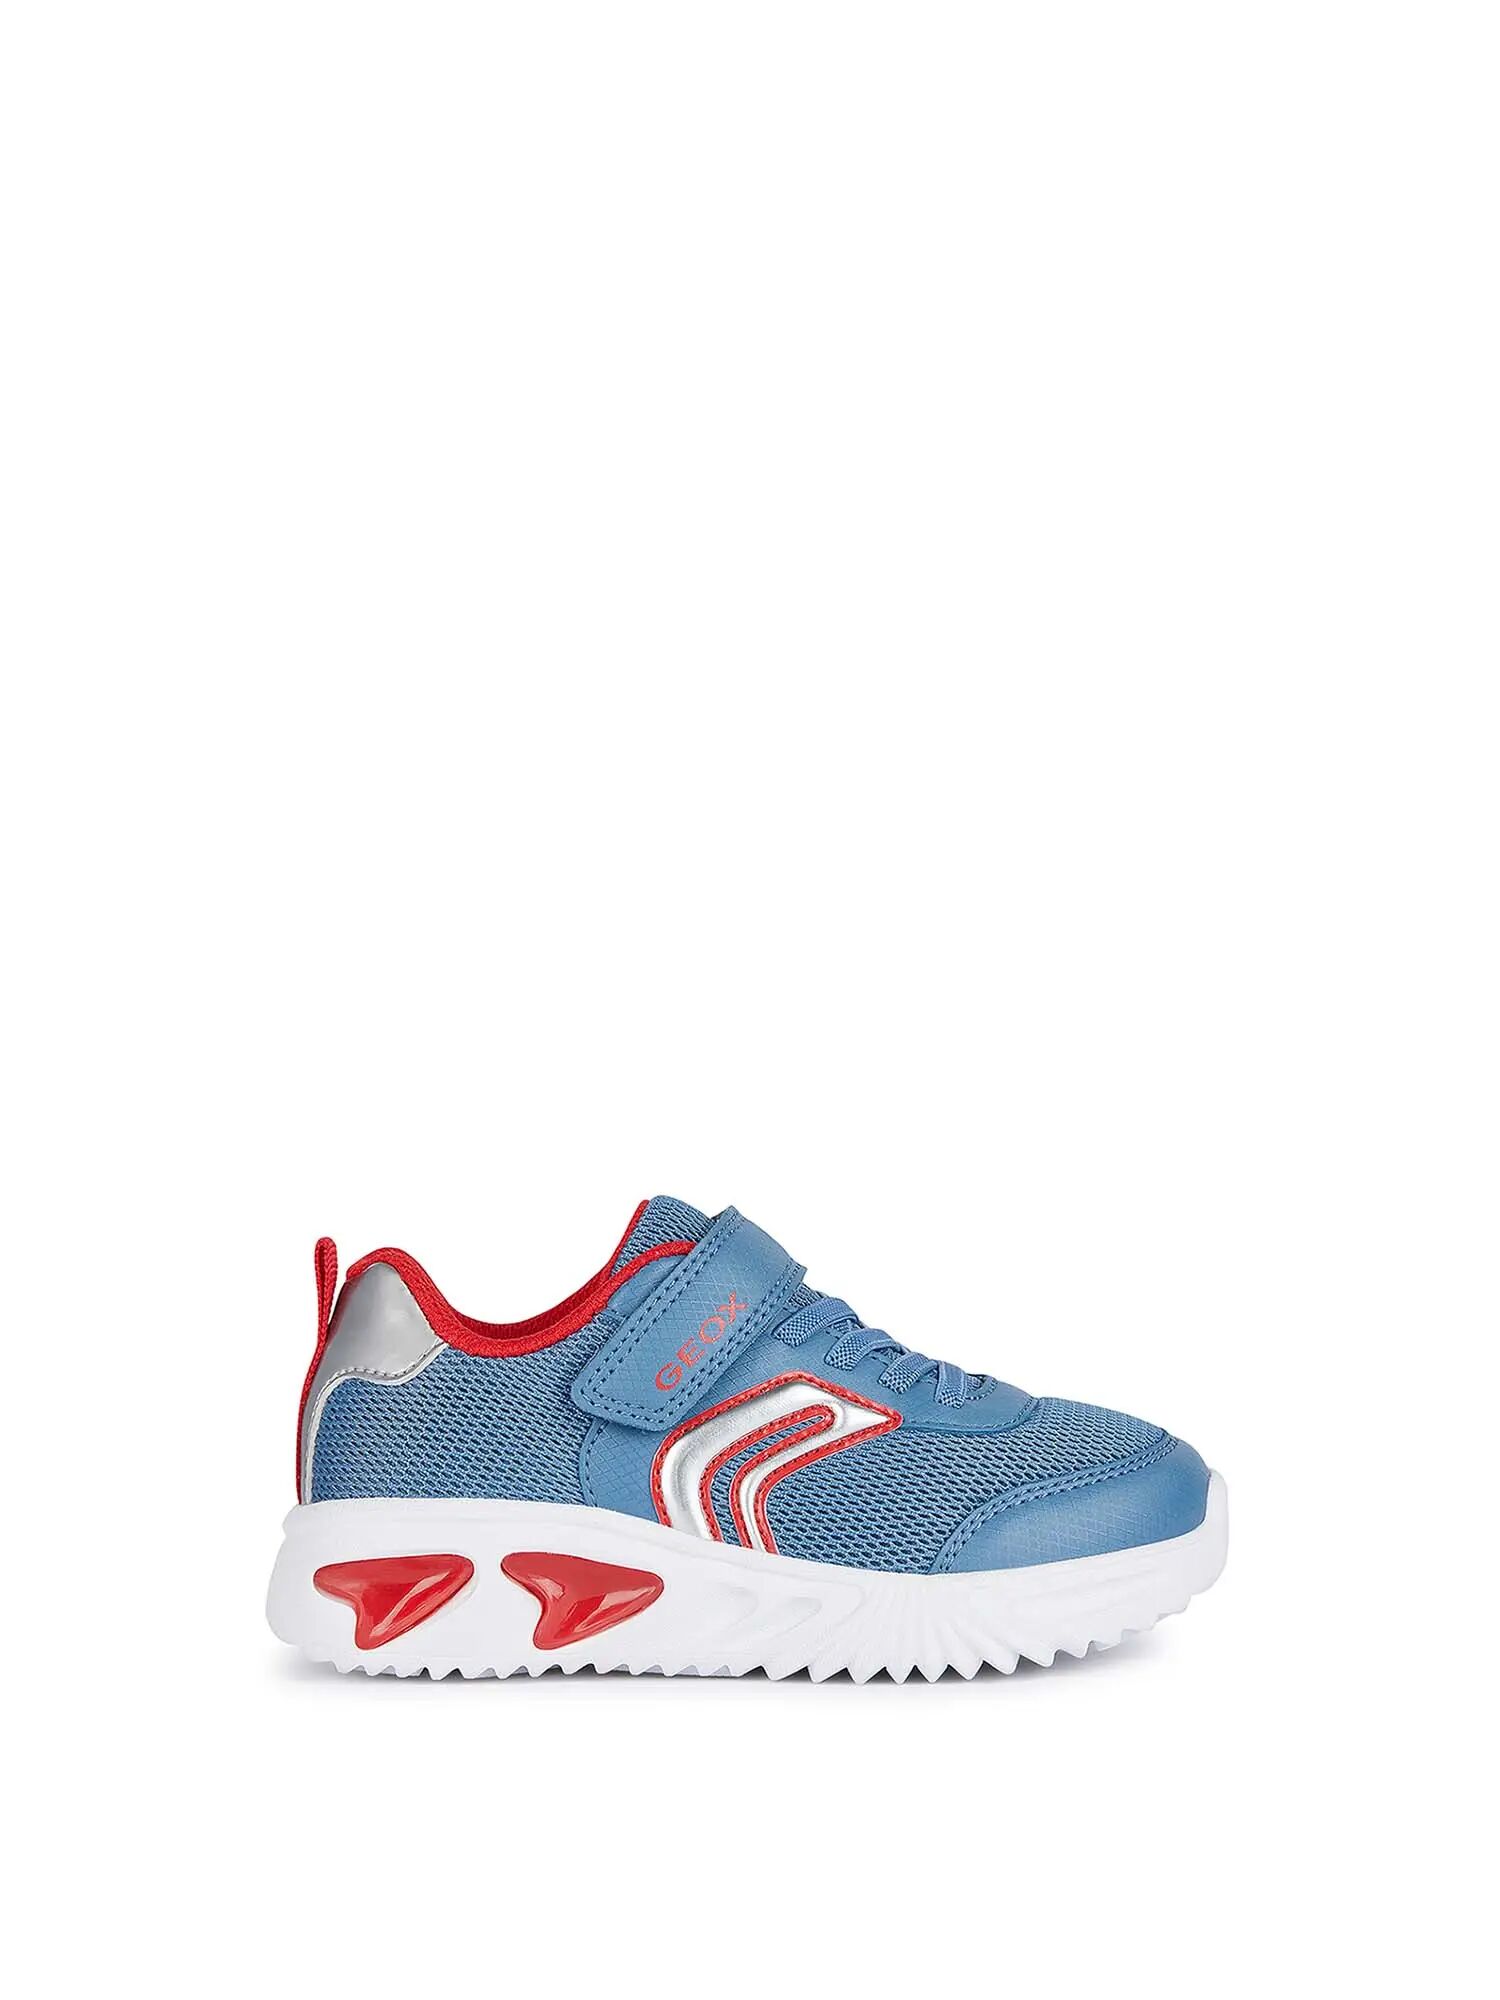 Geox Sneakers Ragazzo Colore Blu/rosso BLU/ROSSO 28